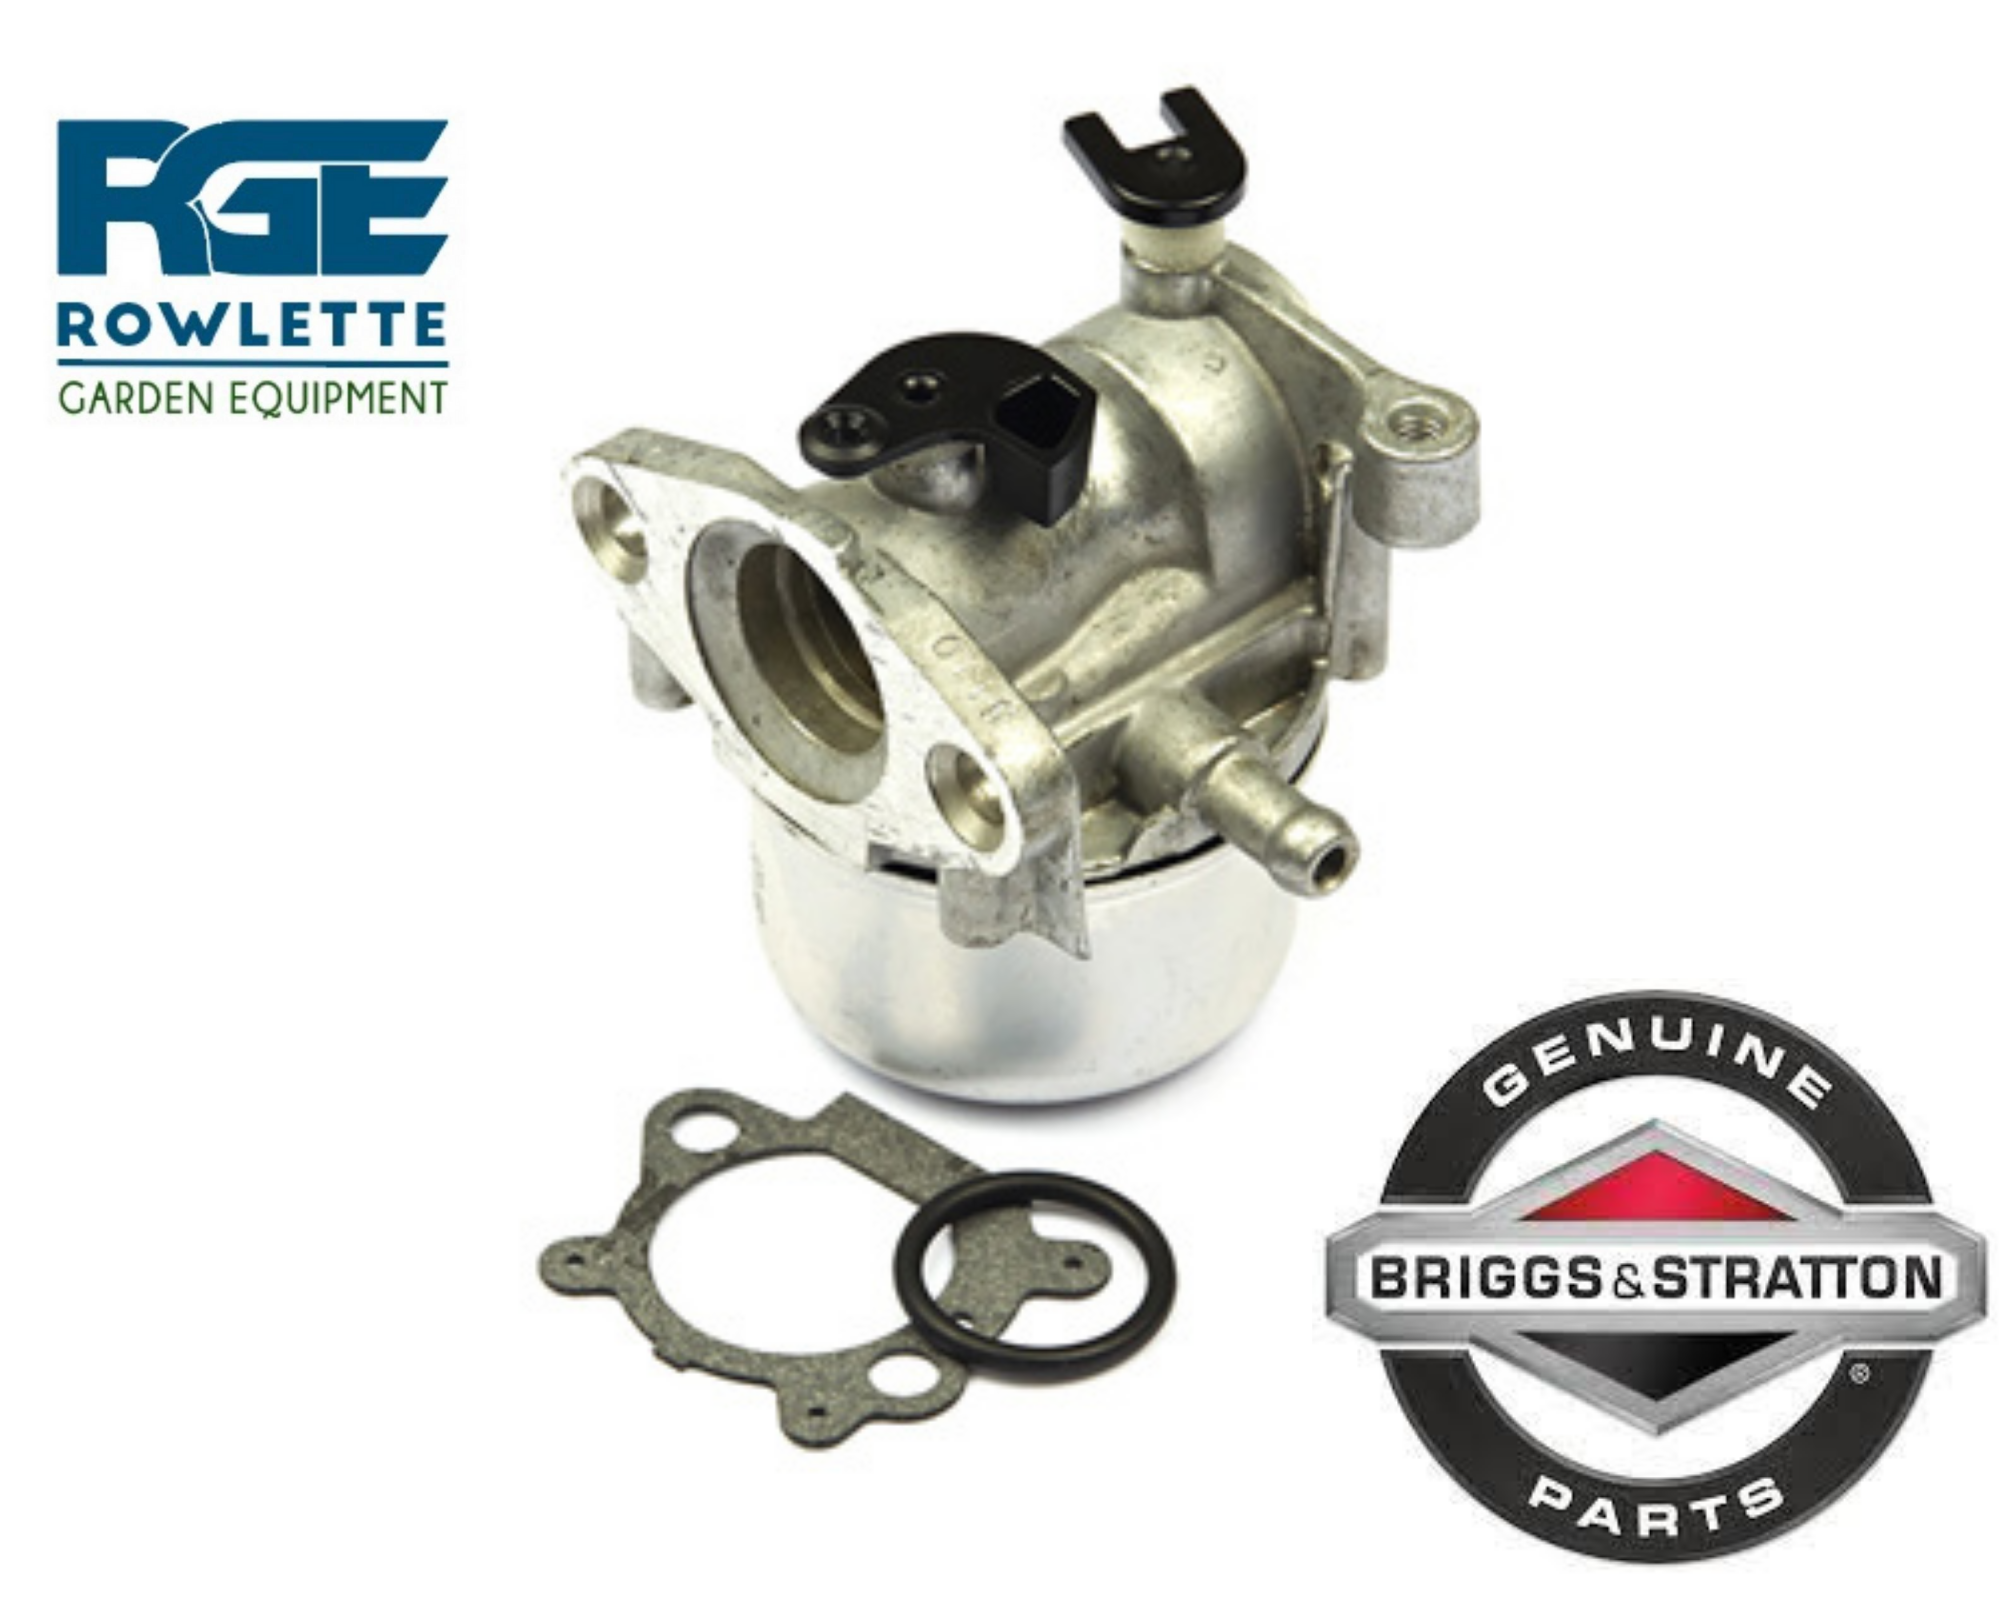 Briggs & Stratton Quantum engines ( auto choke ) Carburetor